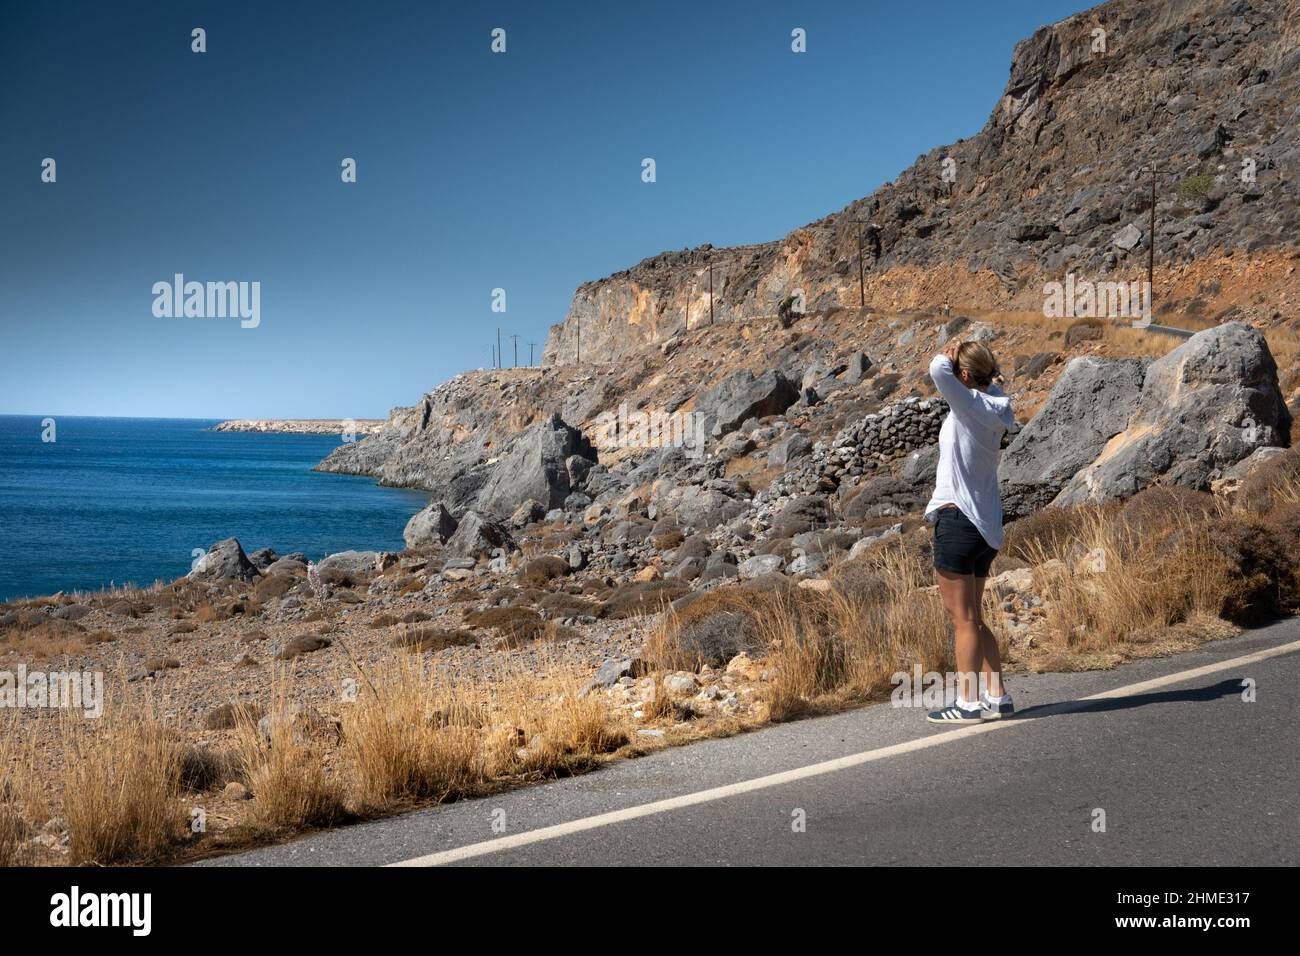 Femme debout à côté du marquage sur la route côtière asphaltée regardant la mer Banque D'Images